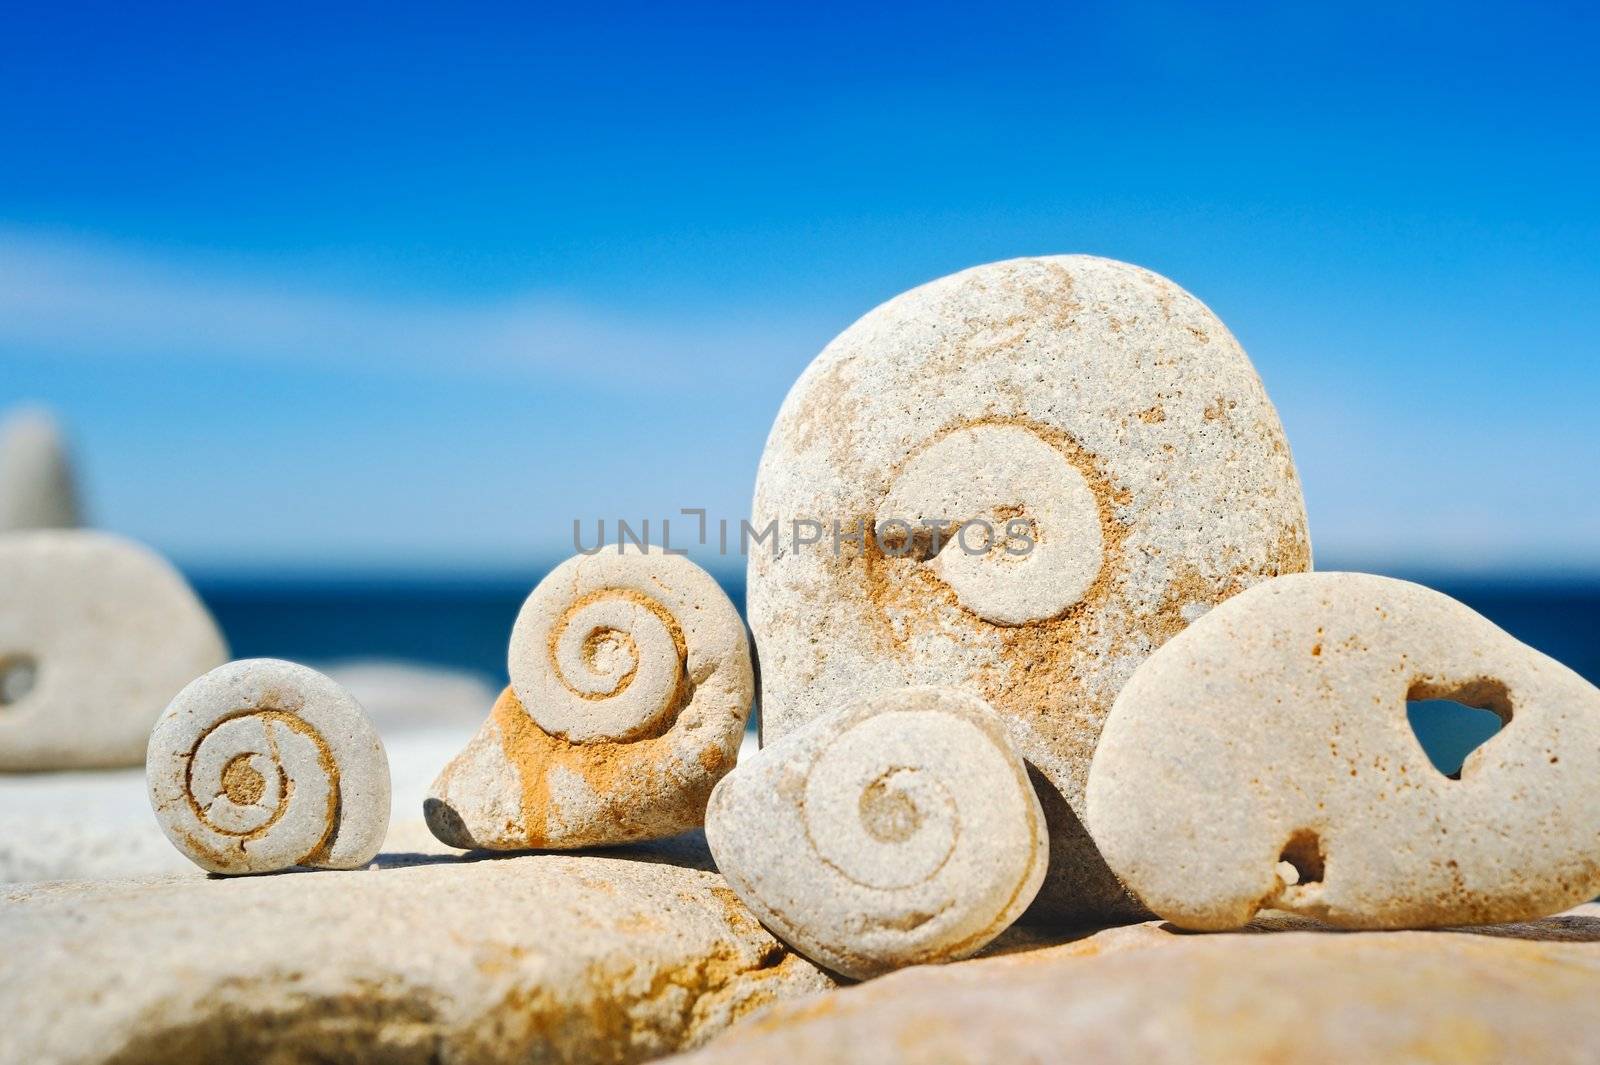 Stone spirals by styf22